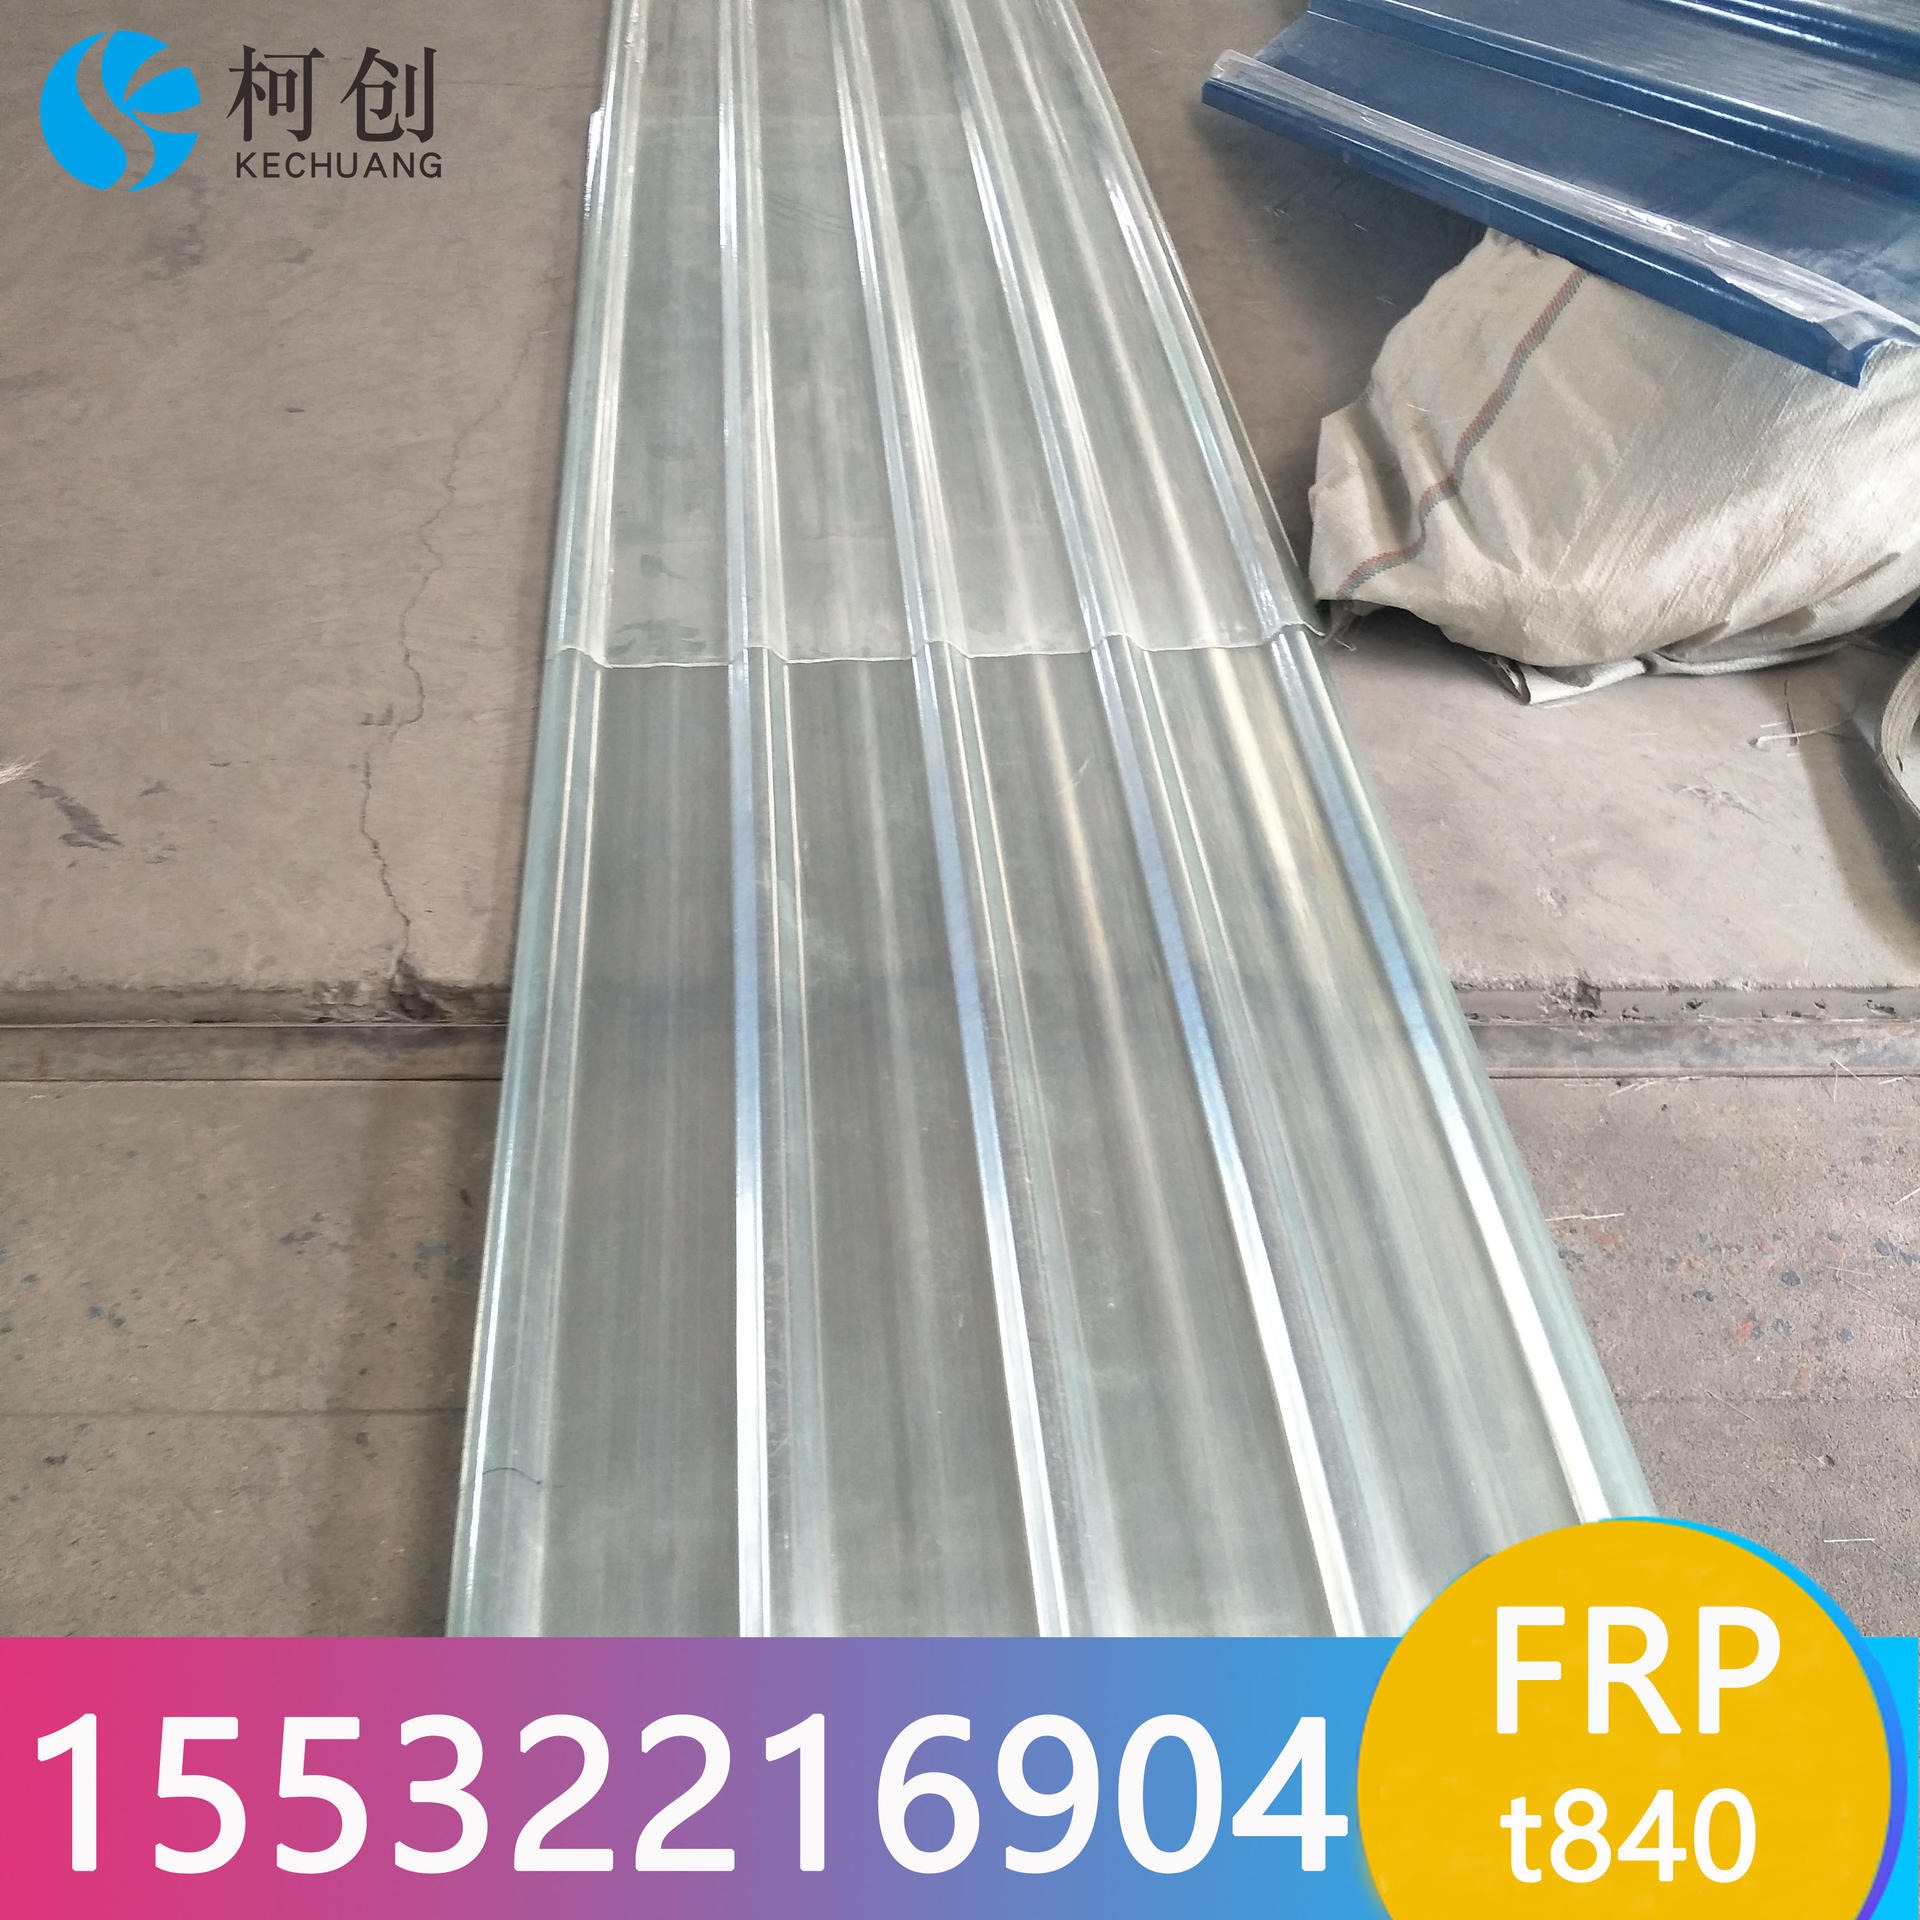 郑州板材厂家 t840型玻璃钢瓦 抗冲击 清晰FRP采光瓦 柯创采光瓦 现货供应